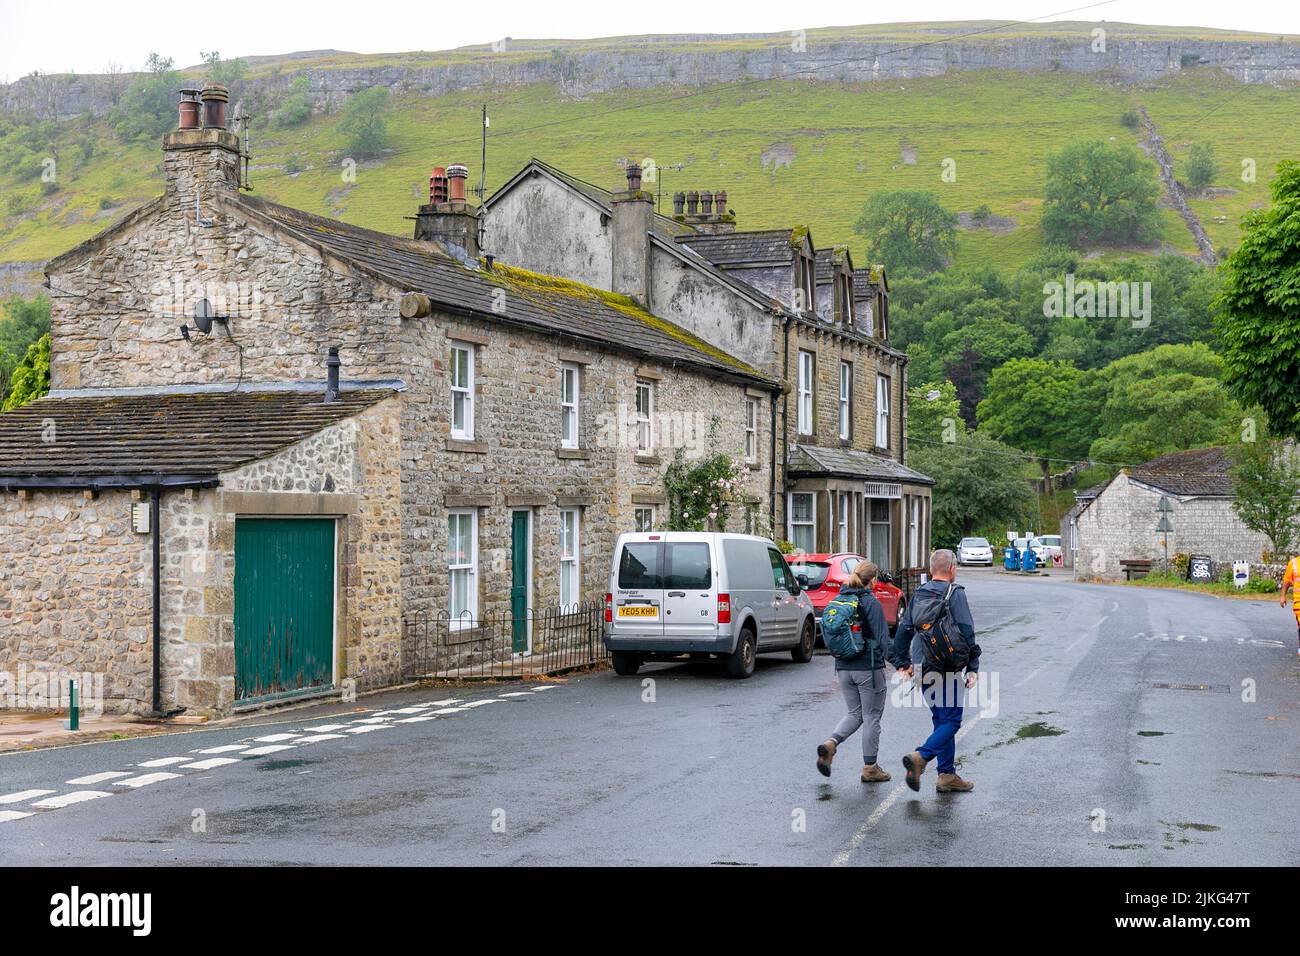 Kettlewell village dans les Yorkshire Dales, deux adultes marchant et faisant de la randonnée dans le village portant des sacs à dos, Yorkshire, Angleterre, Royaume-Uni Banque D'Images